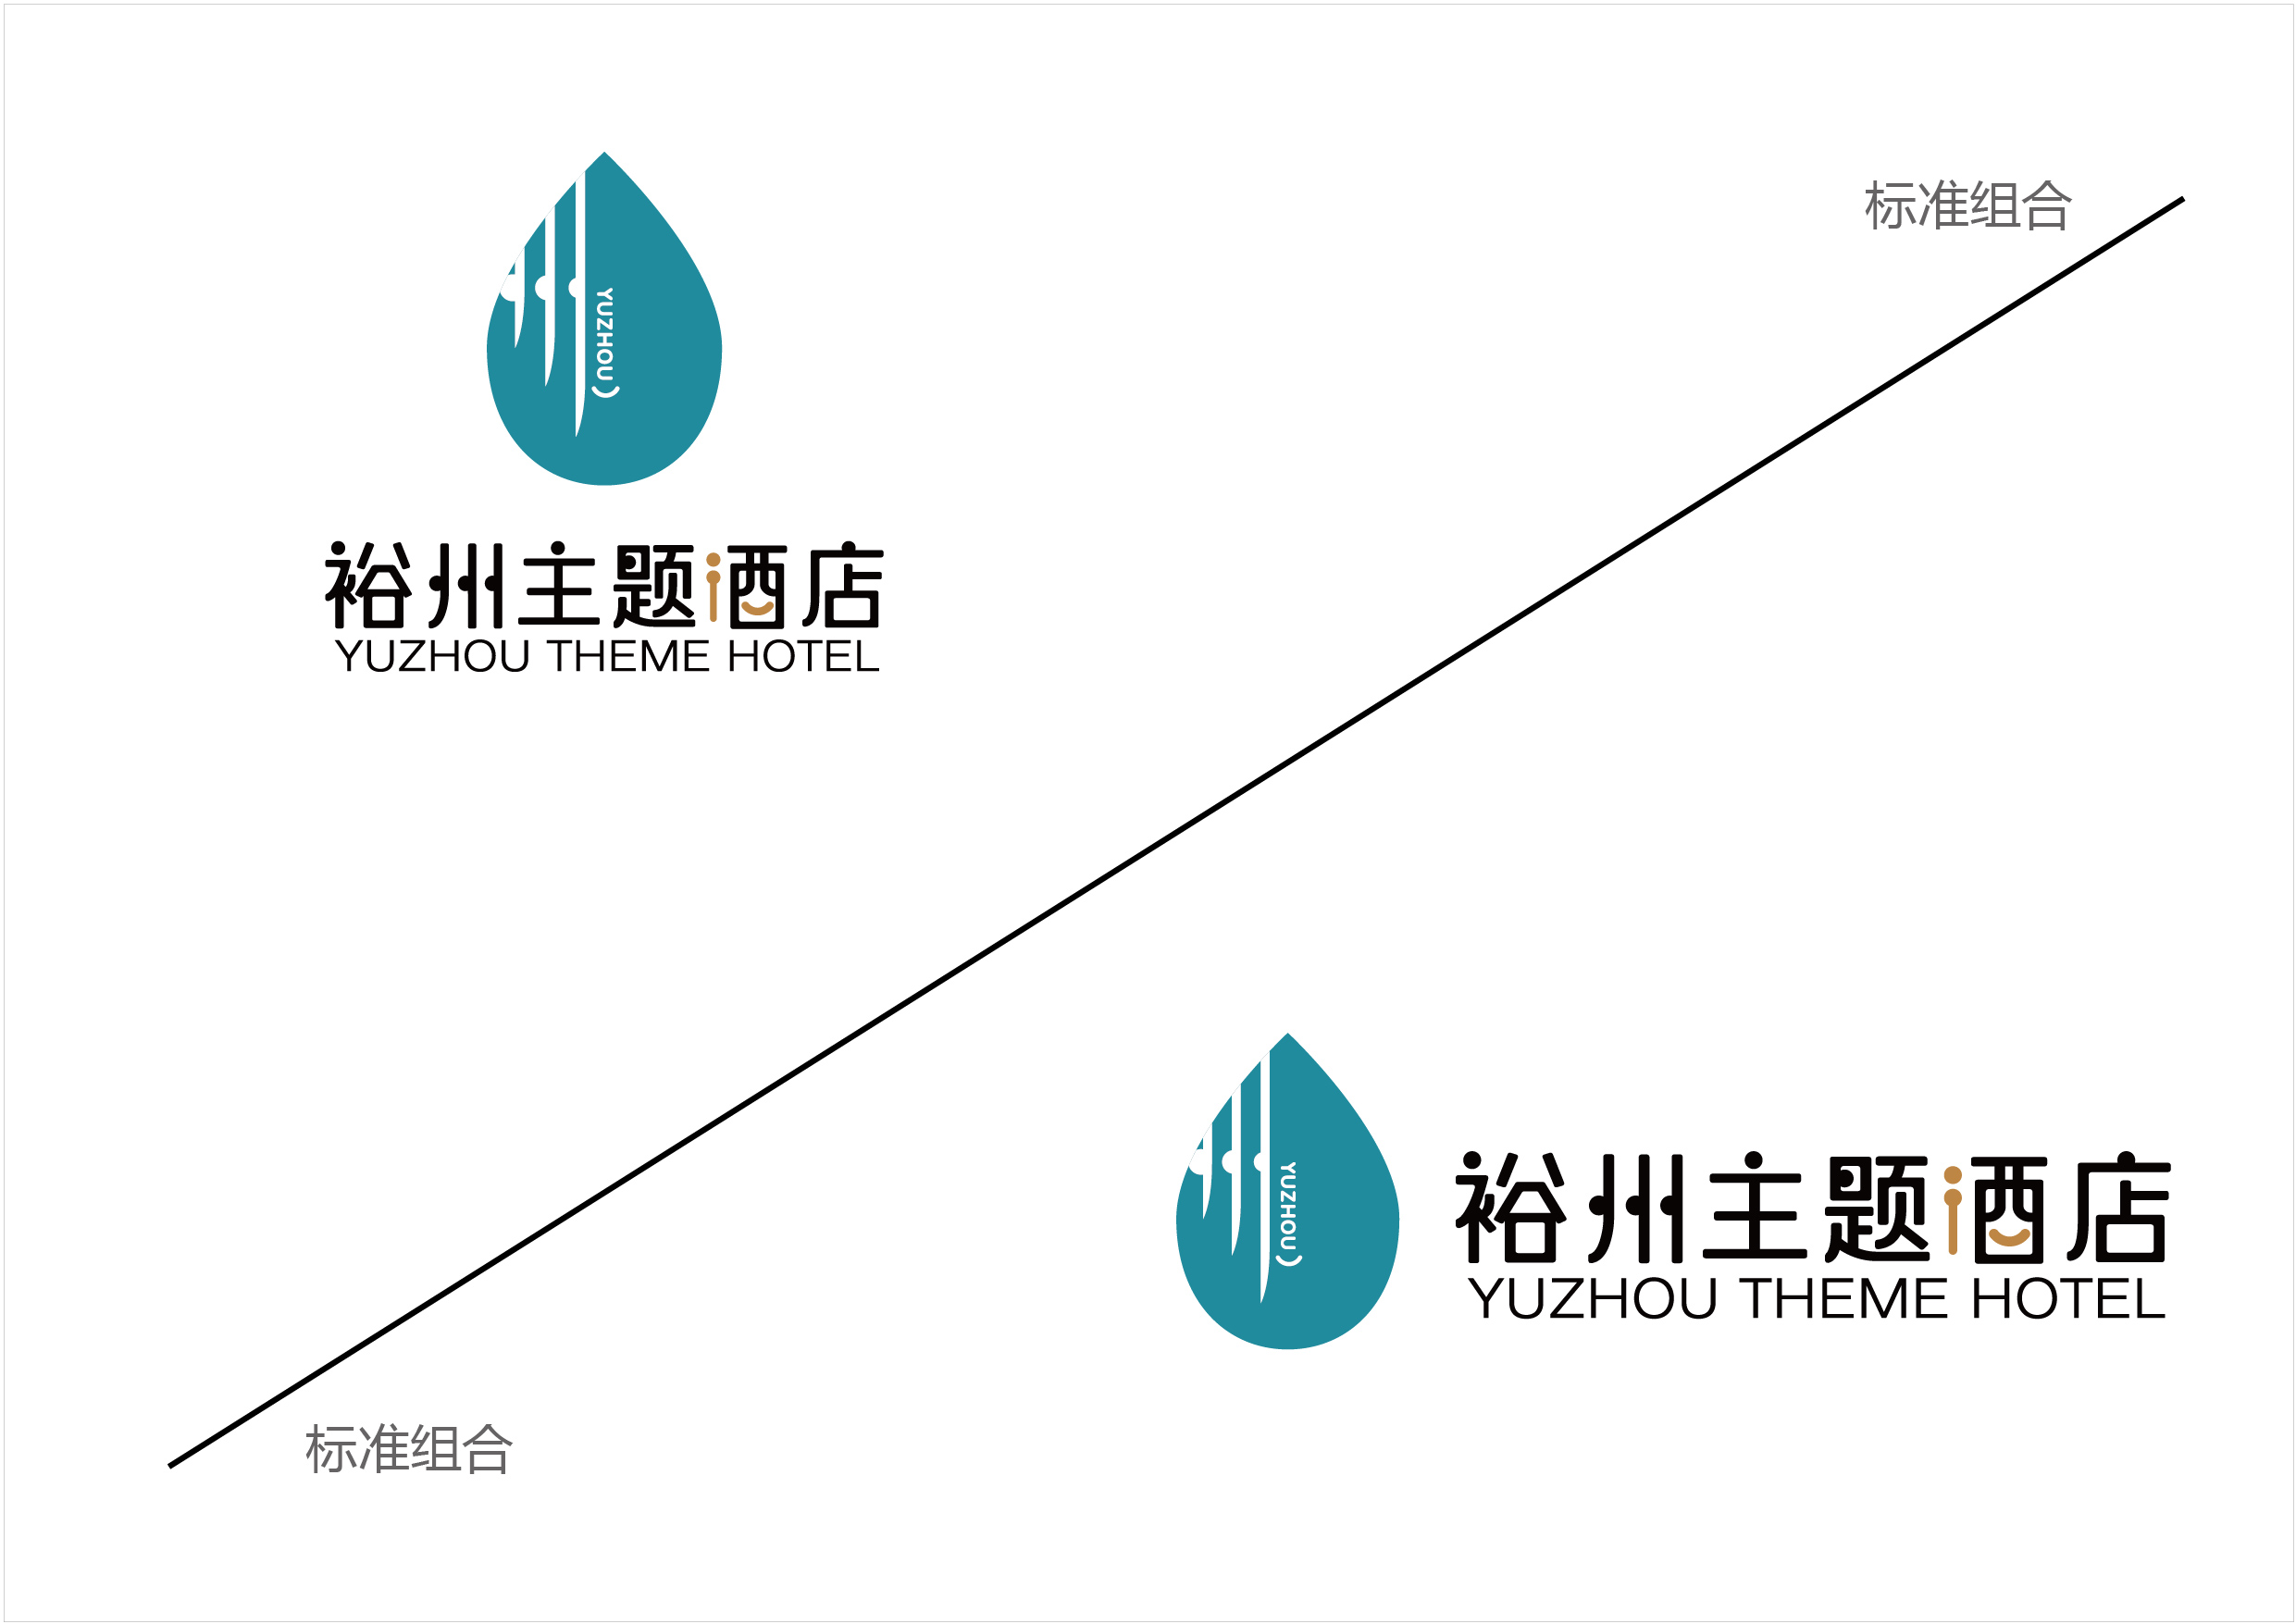 裕州-主题酒店及足浴养生馆logo方案1 20201113-06.jpg